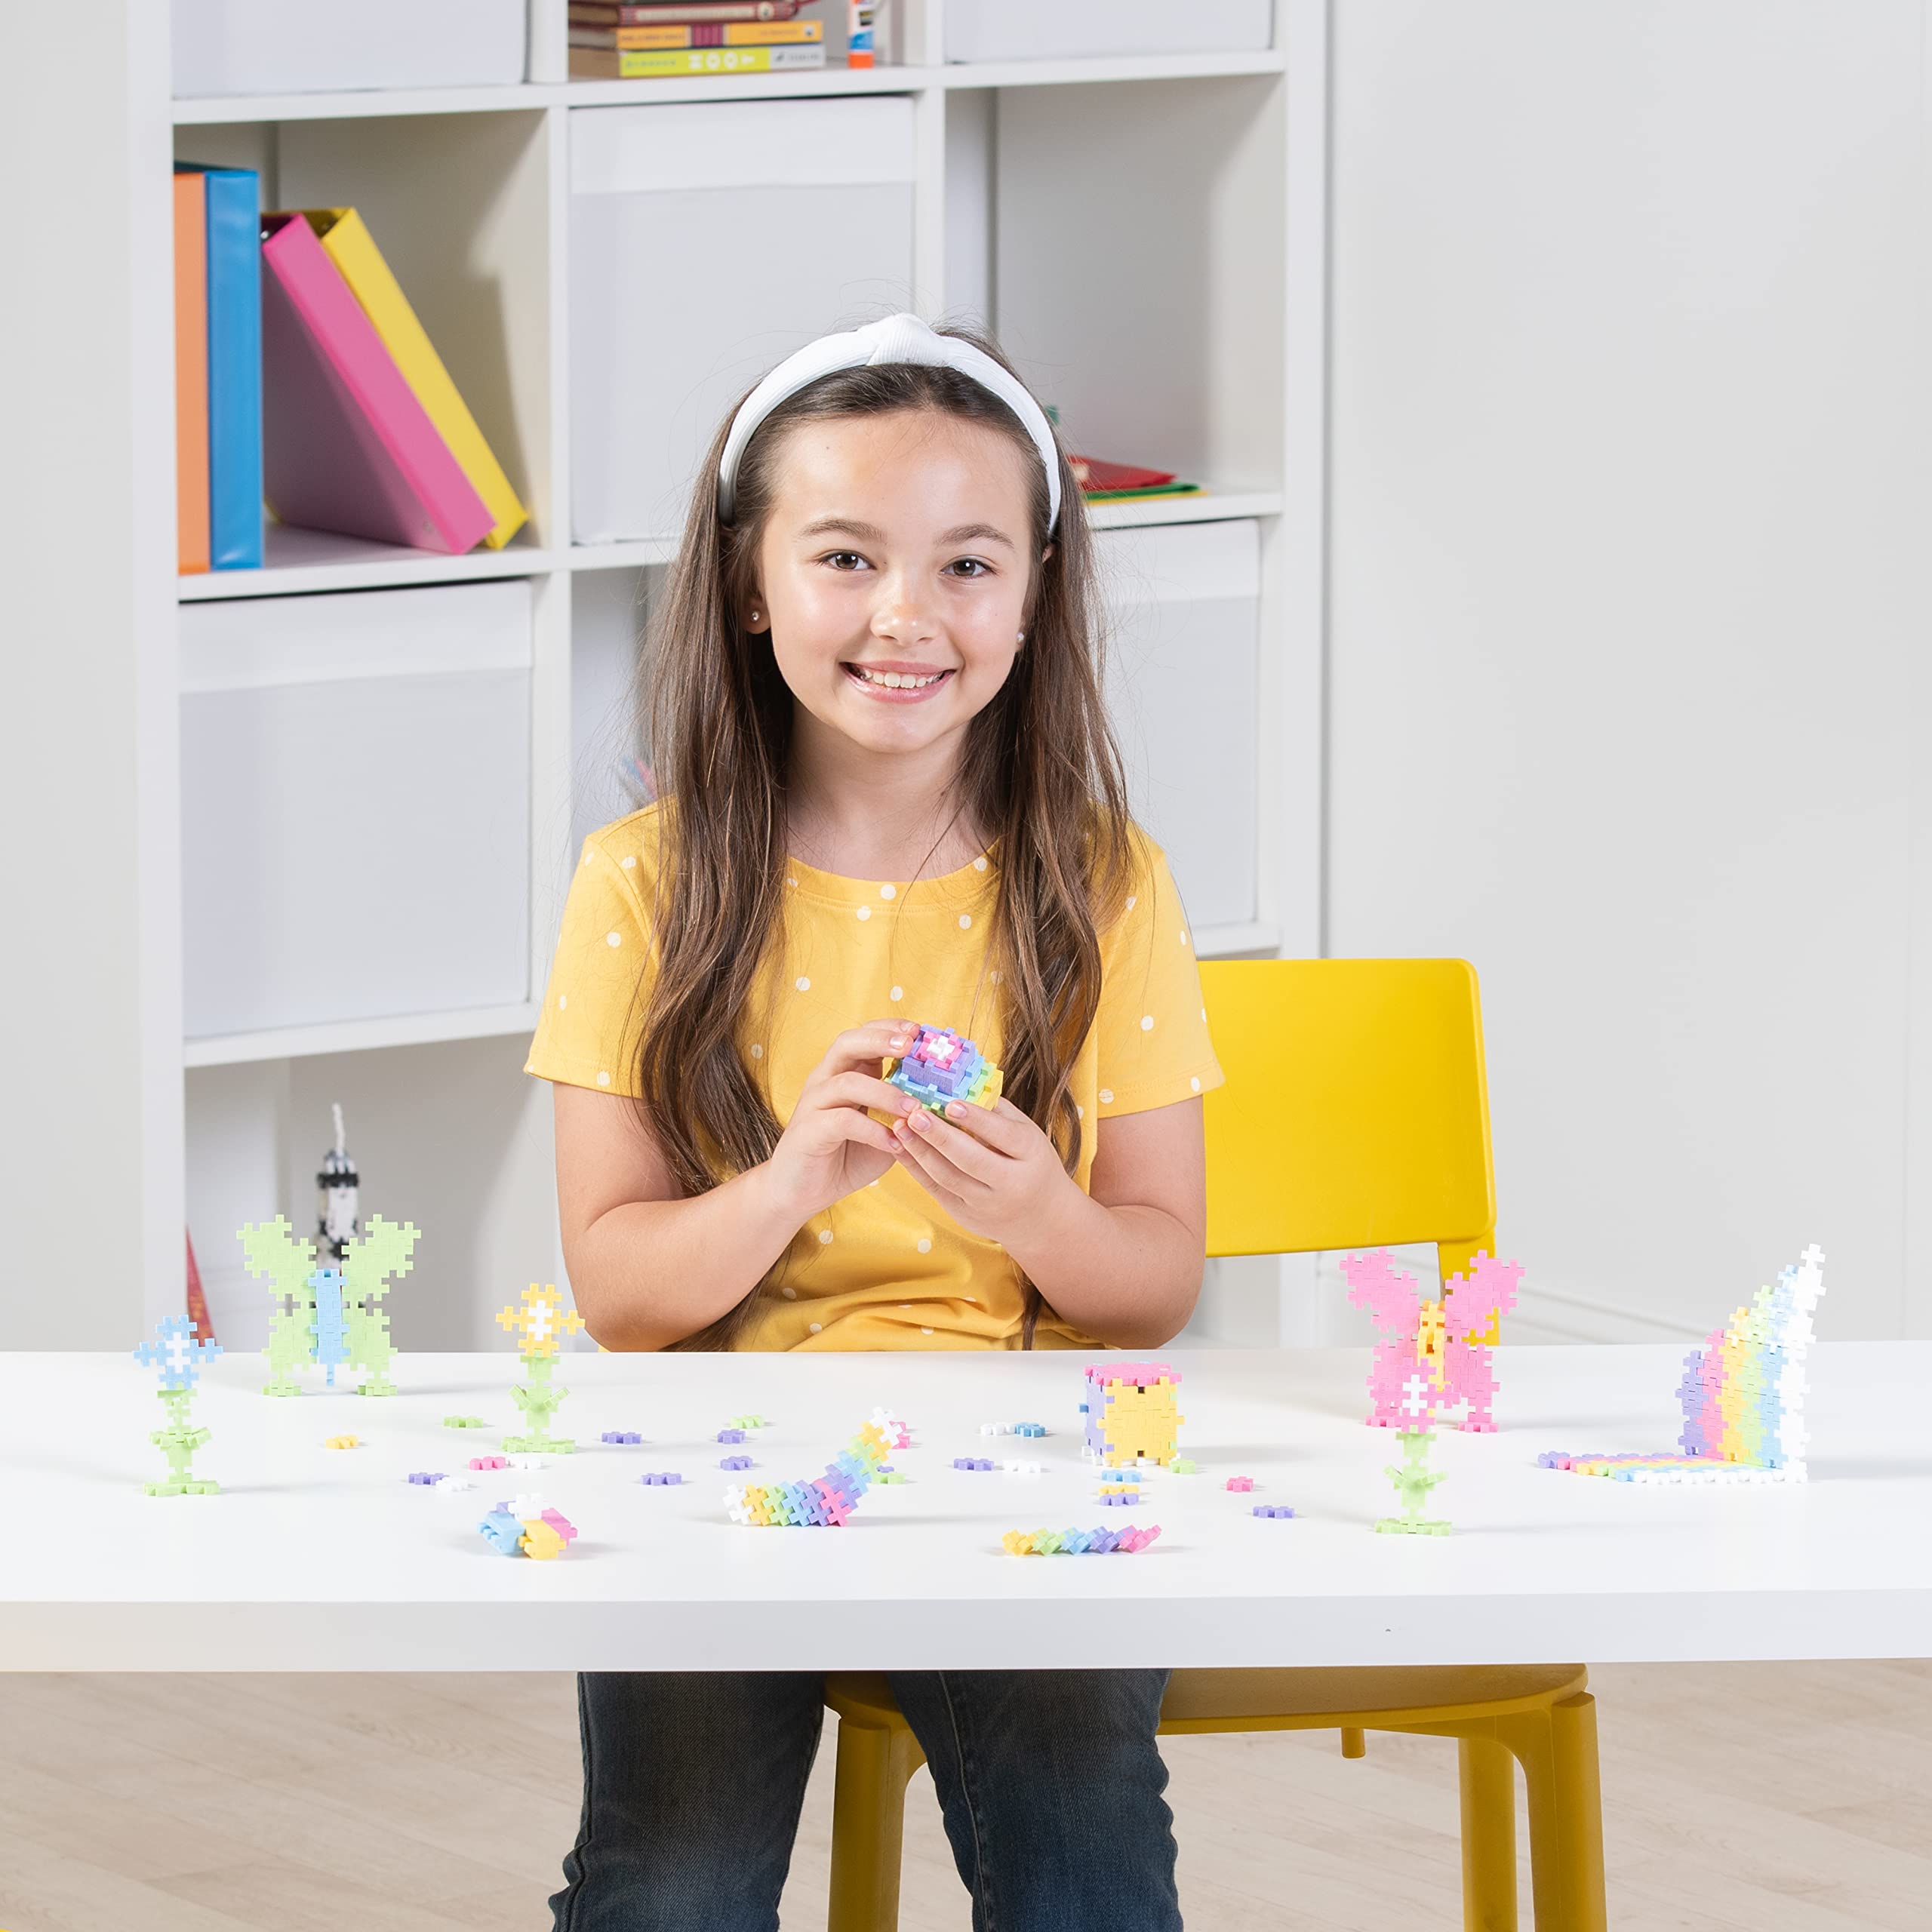 PLUS PLUS - Open Play Set - 600 Piece - Pastel Color Mix, Construction Building Stem Toy, Interlocking Mini Puzzle Blocks for Kids